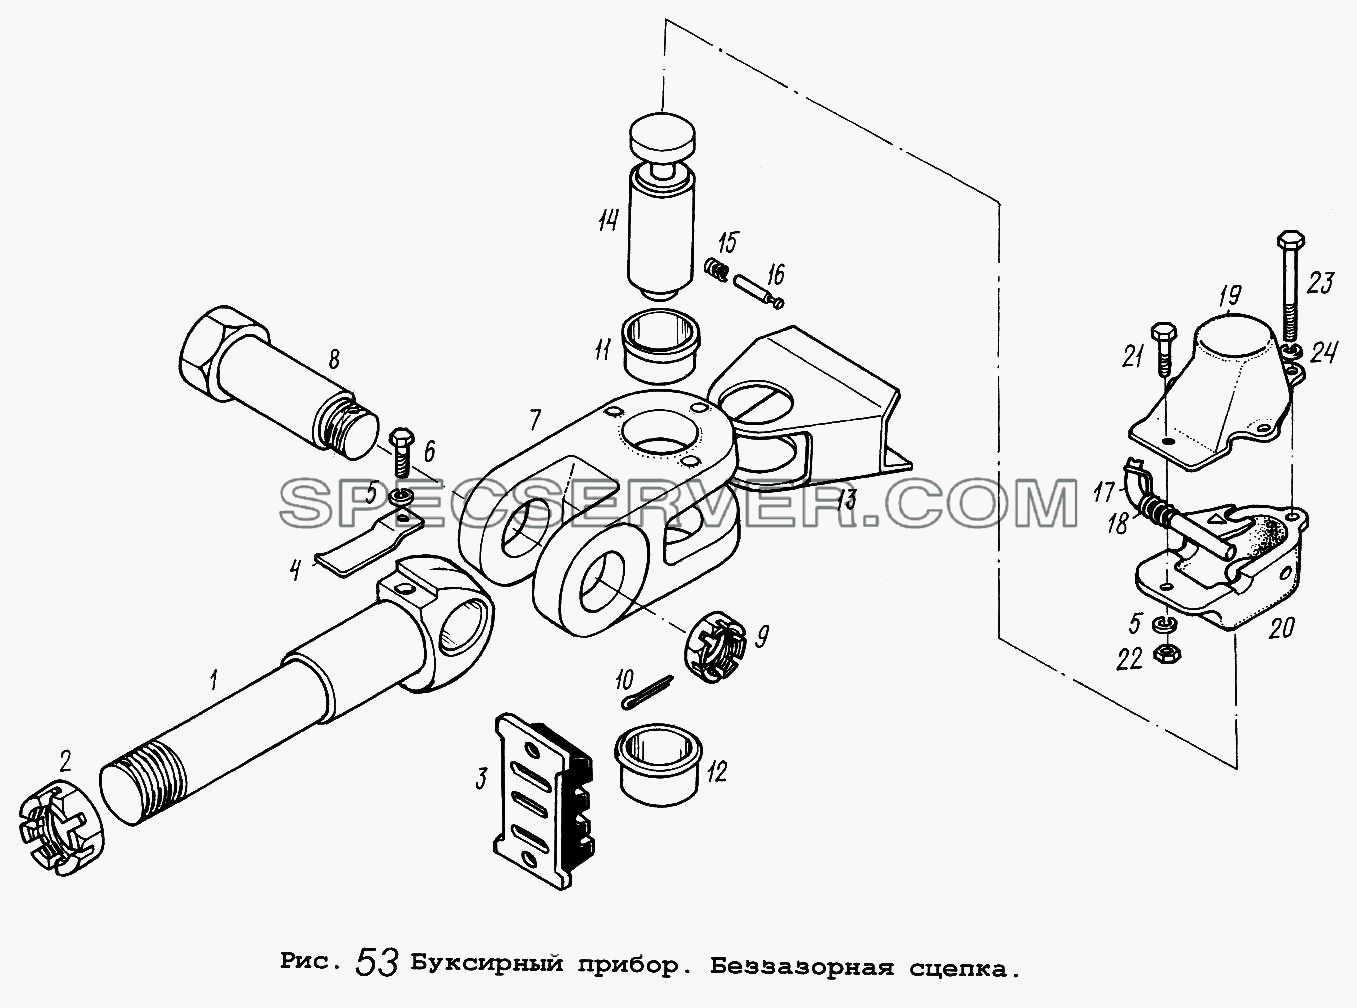 Буксирный прибор. Беззазорная сцепка для МАЗ-5337 (список запасных частей)